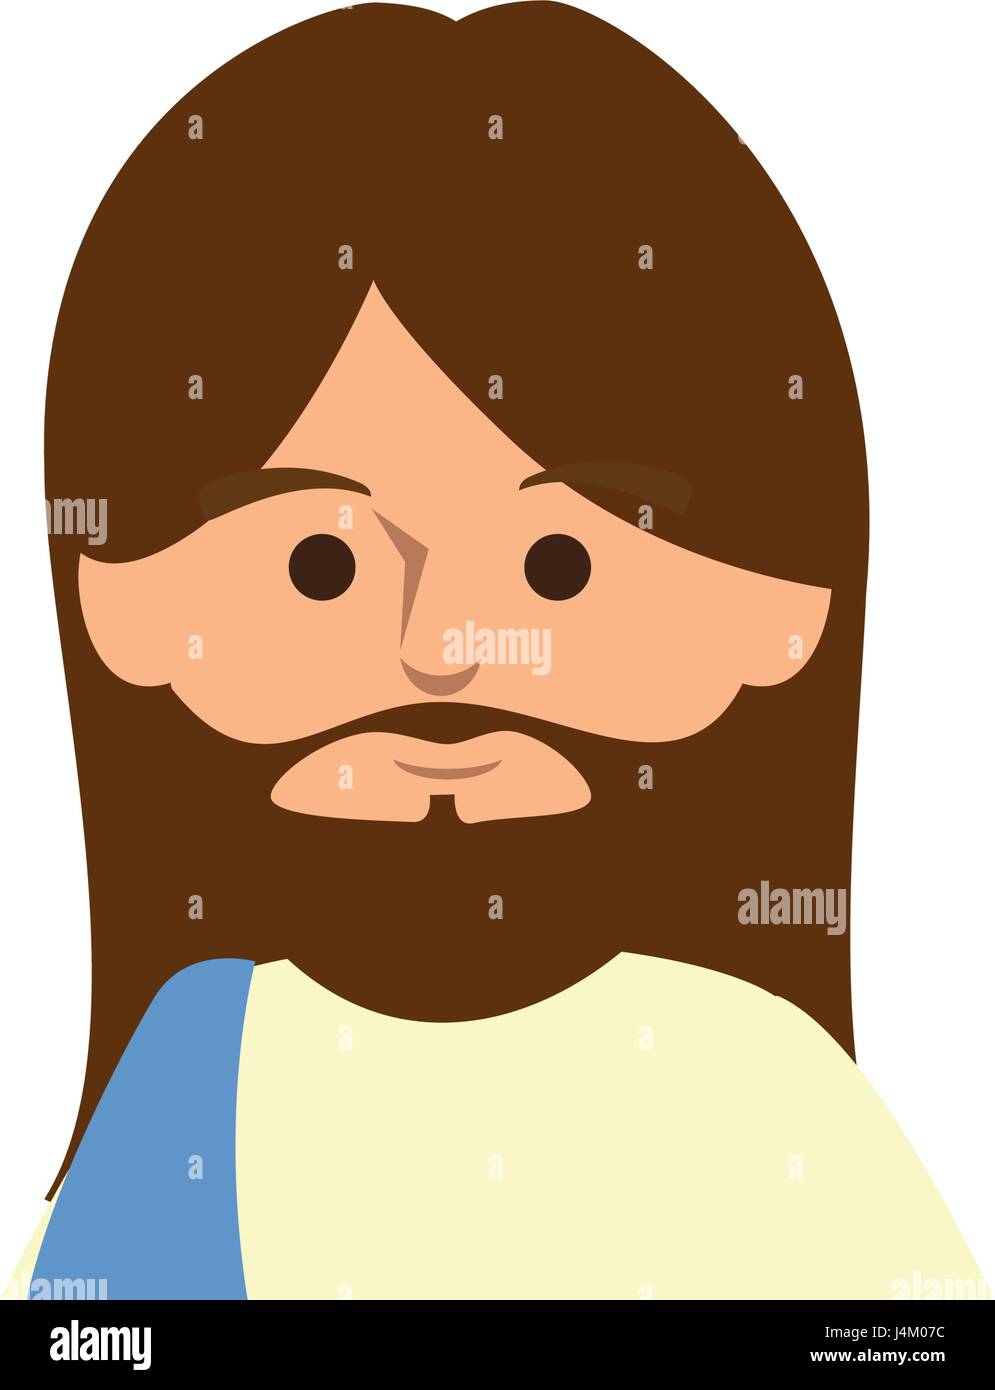 Jesuschrist face cartoon Stock Vector Image & Art - Alamy